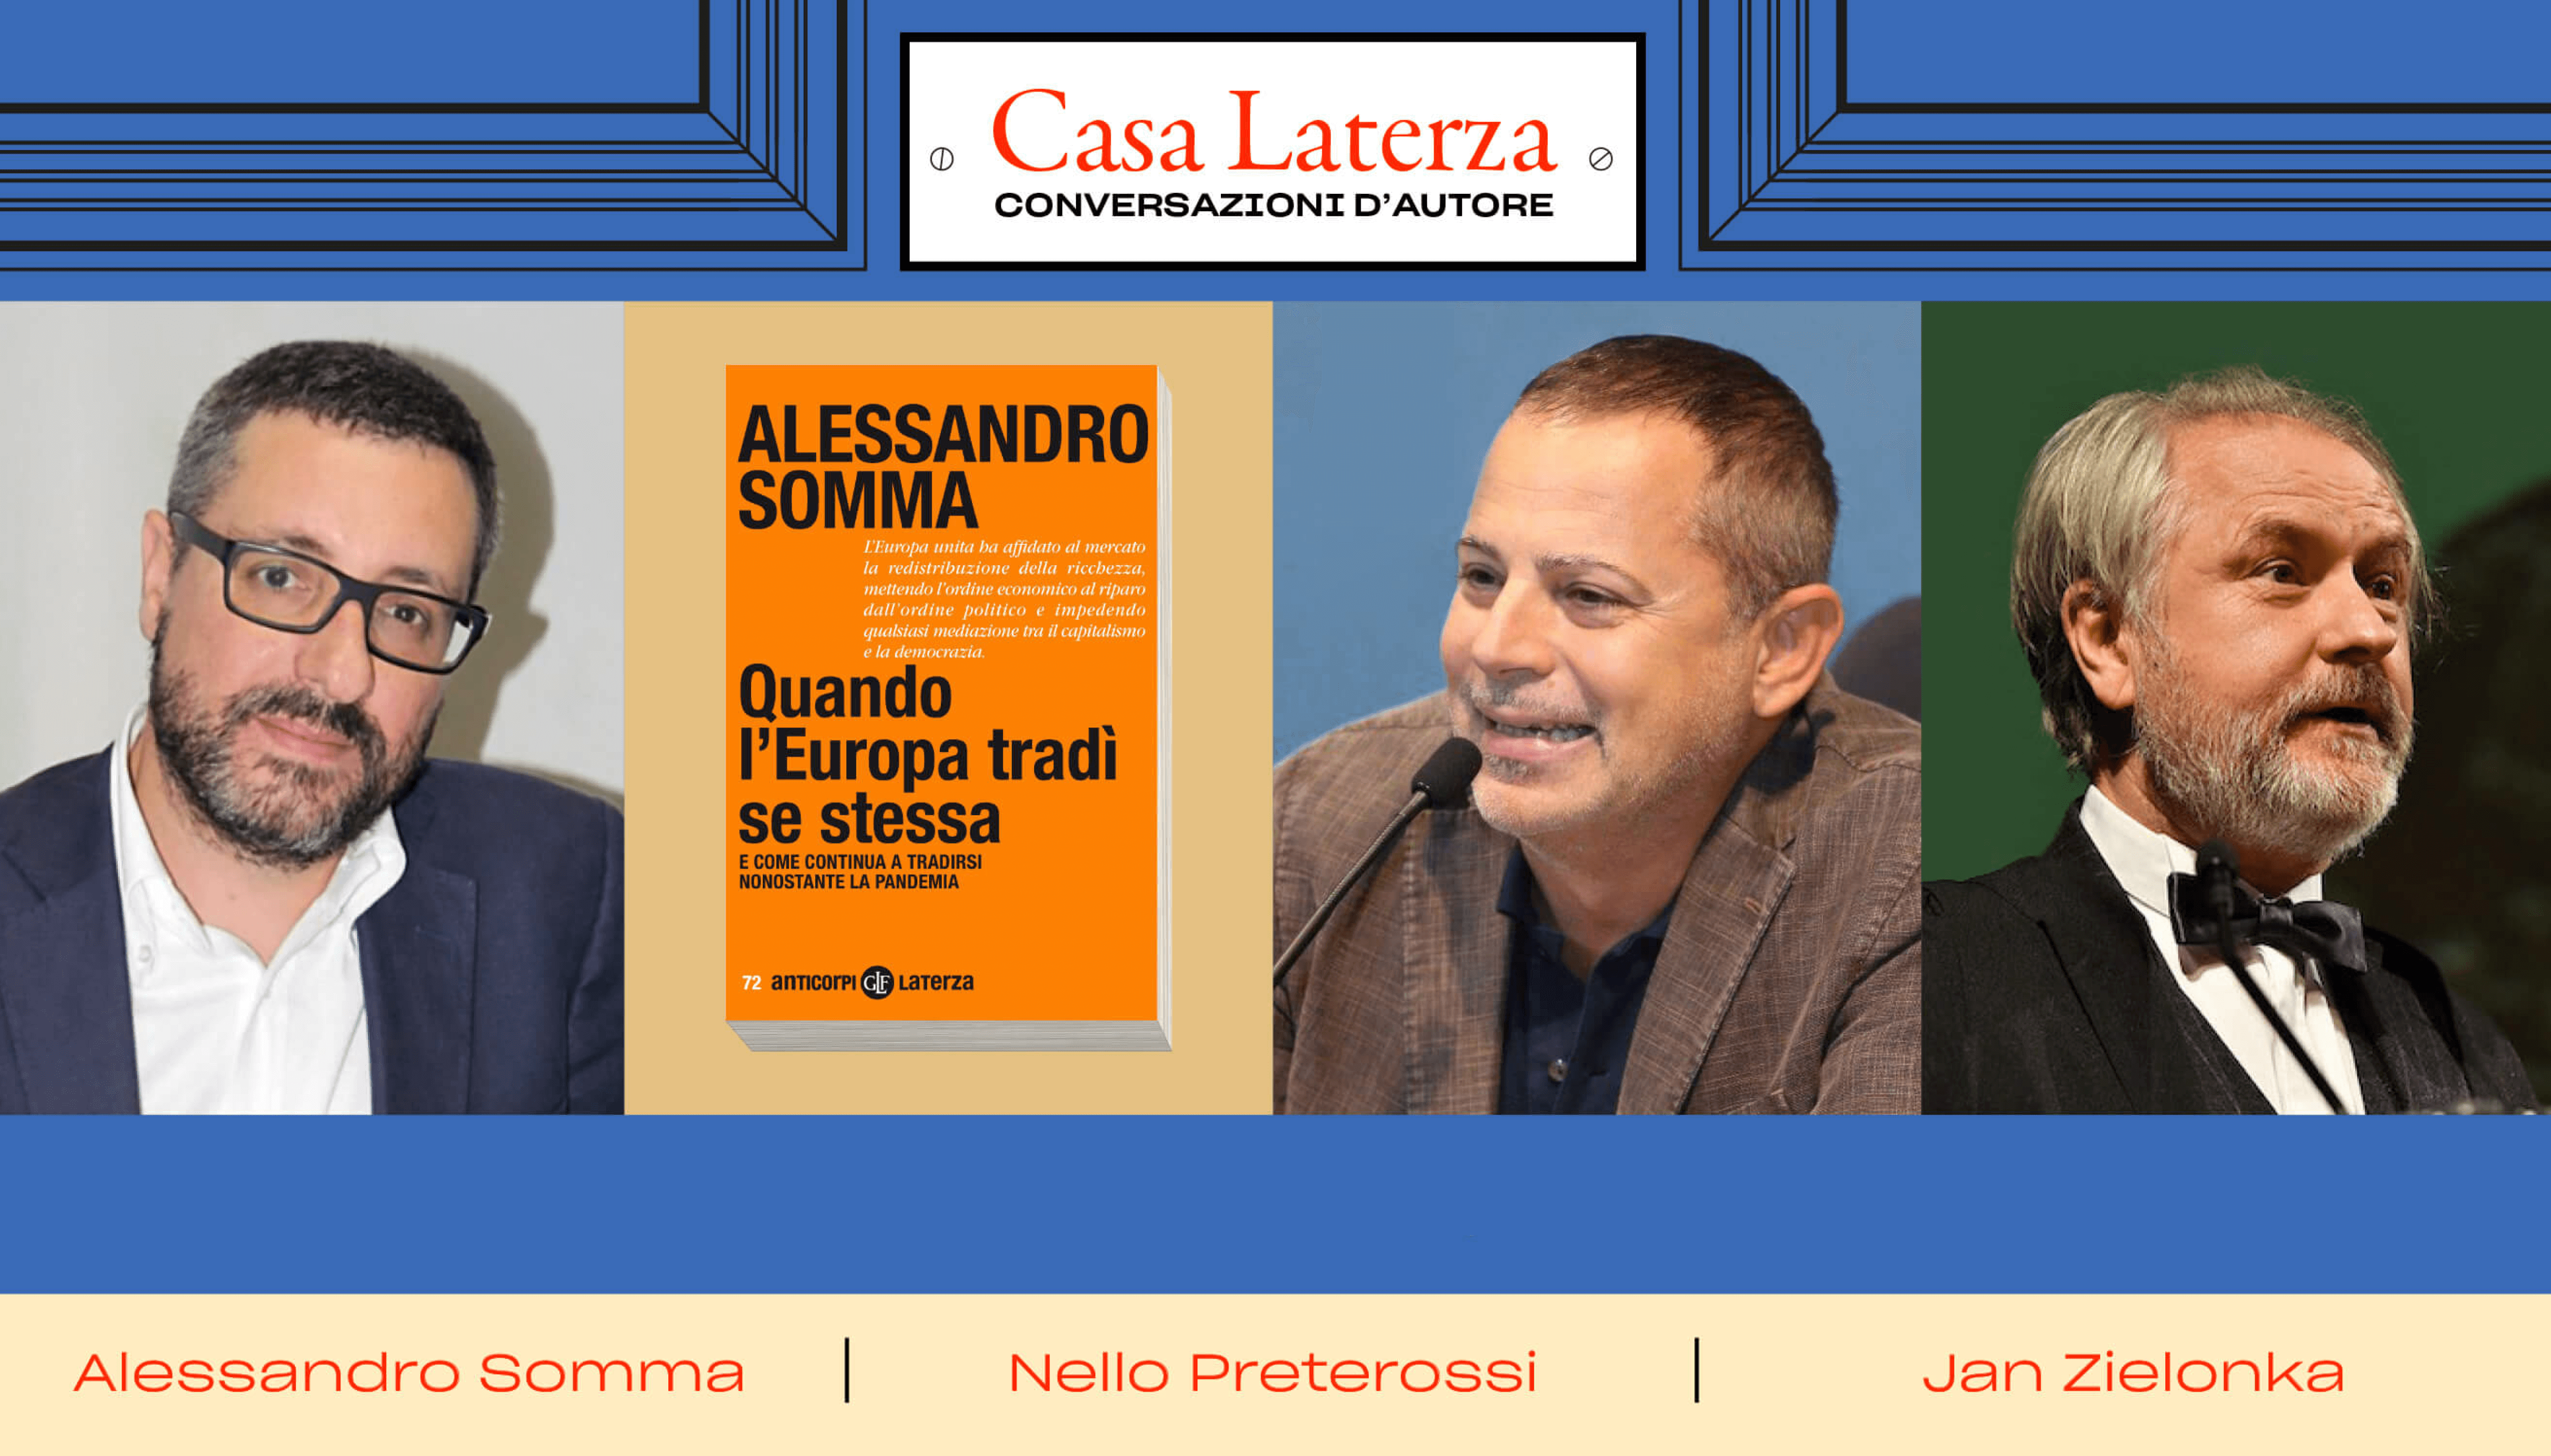 #CasaLaterza: Alessandro Somma dialoga con Nello Preterossi e Jan Zielonka